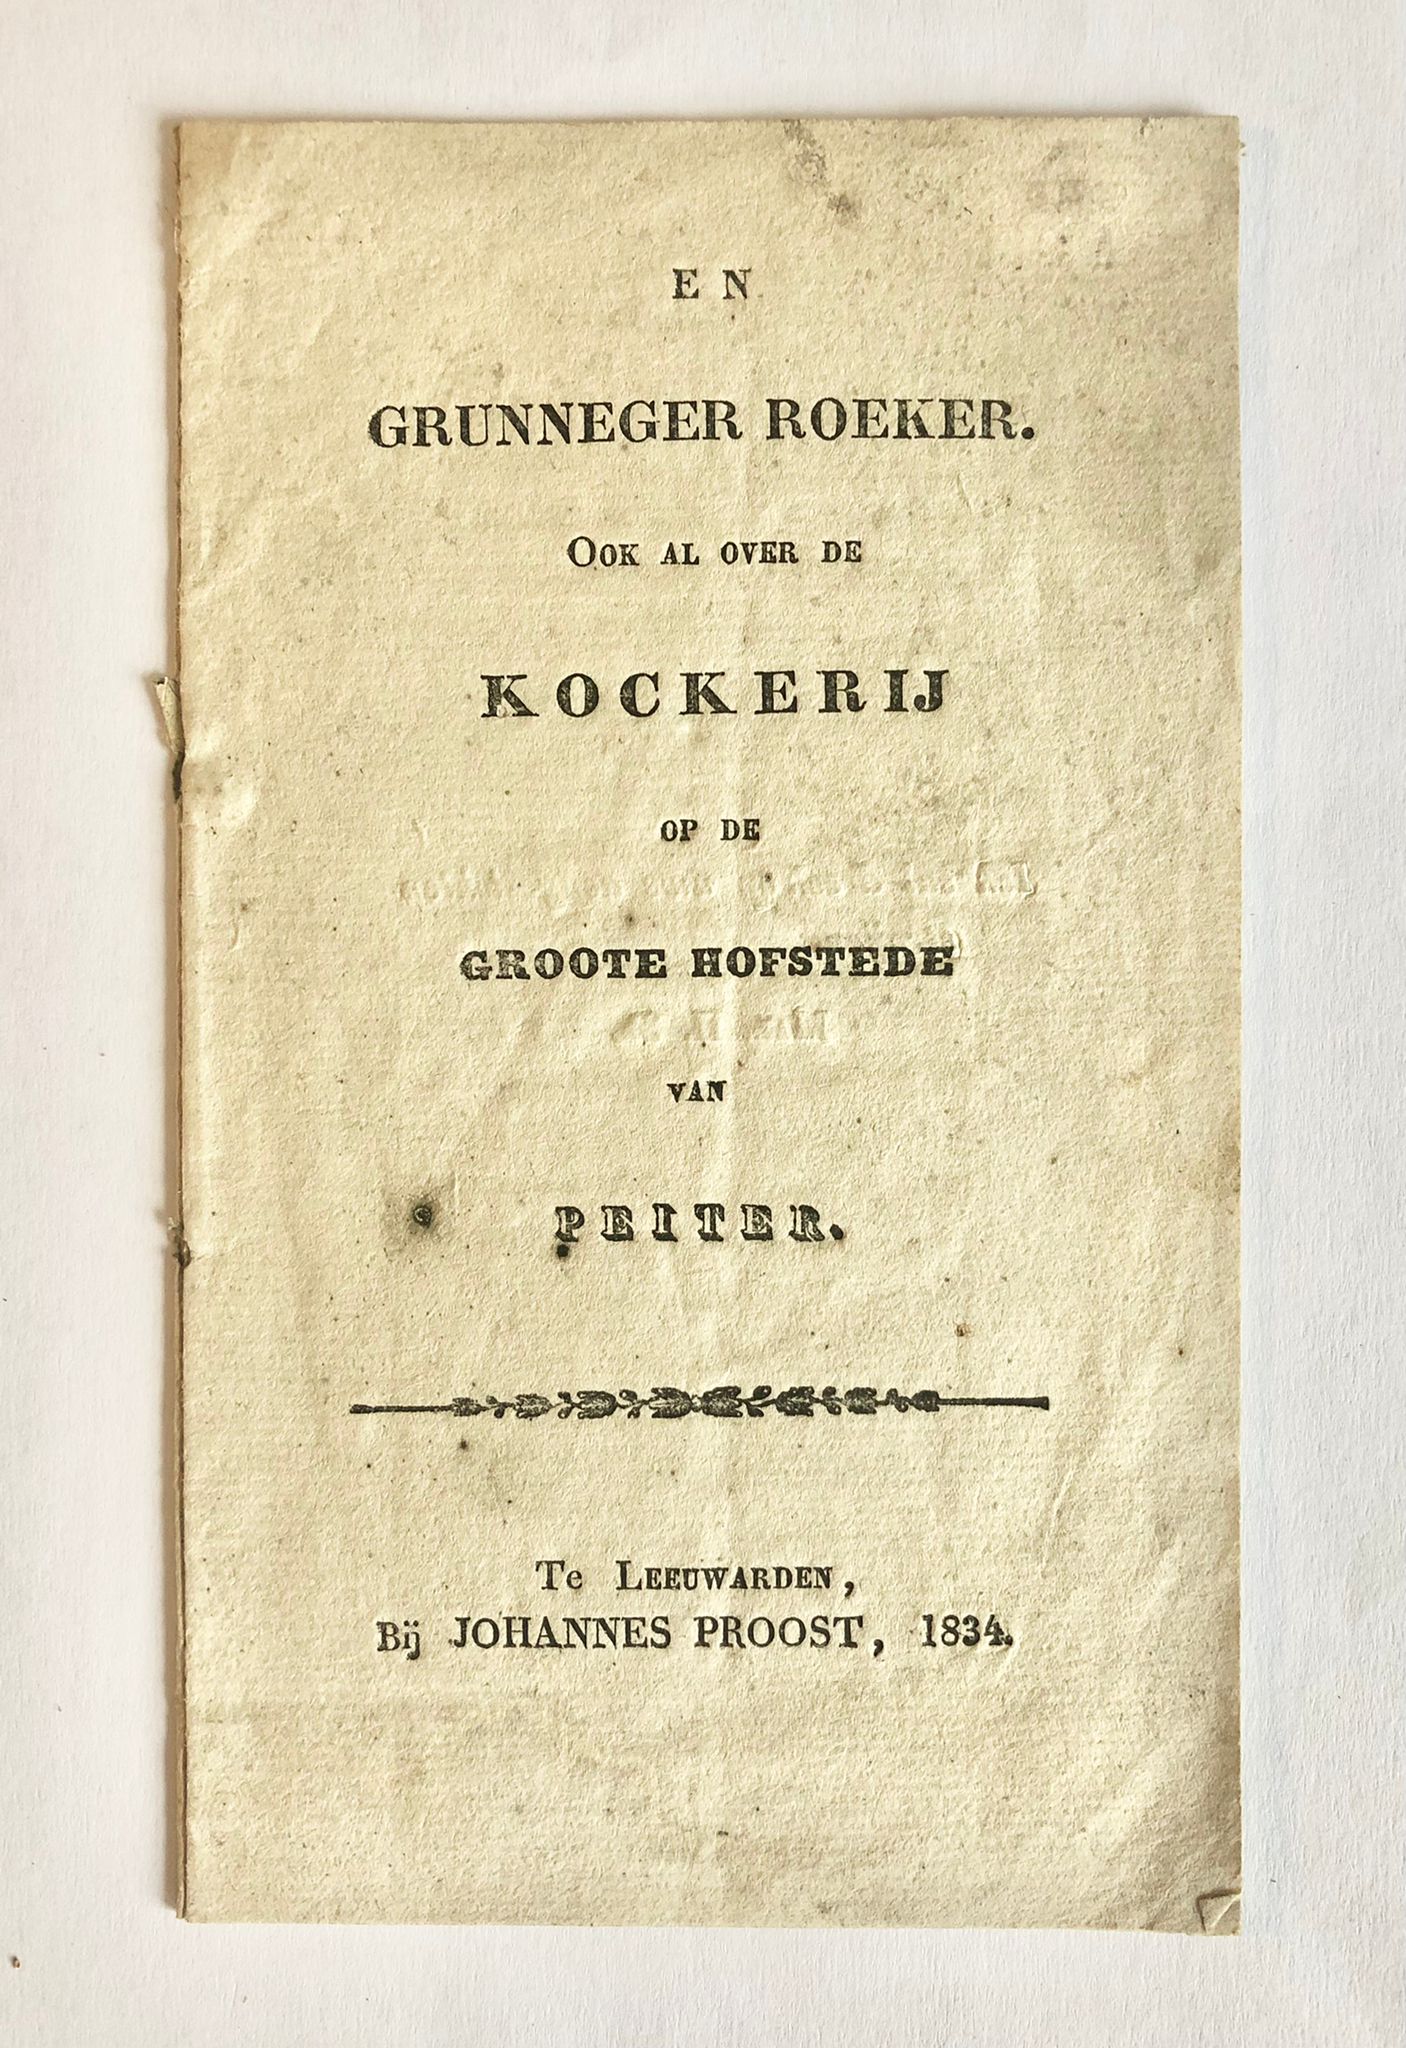 [Ulrum, 1834, Rare] En Grunneger Roeker. Ook al over de Kockerij op de groote Hofstede van Peiter. Bij Johannes Proost, Te Leeuwarden, 1834, 8 pp.